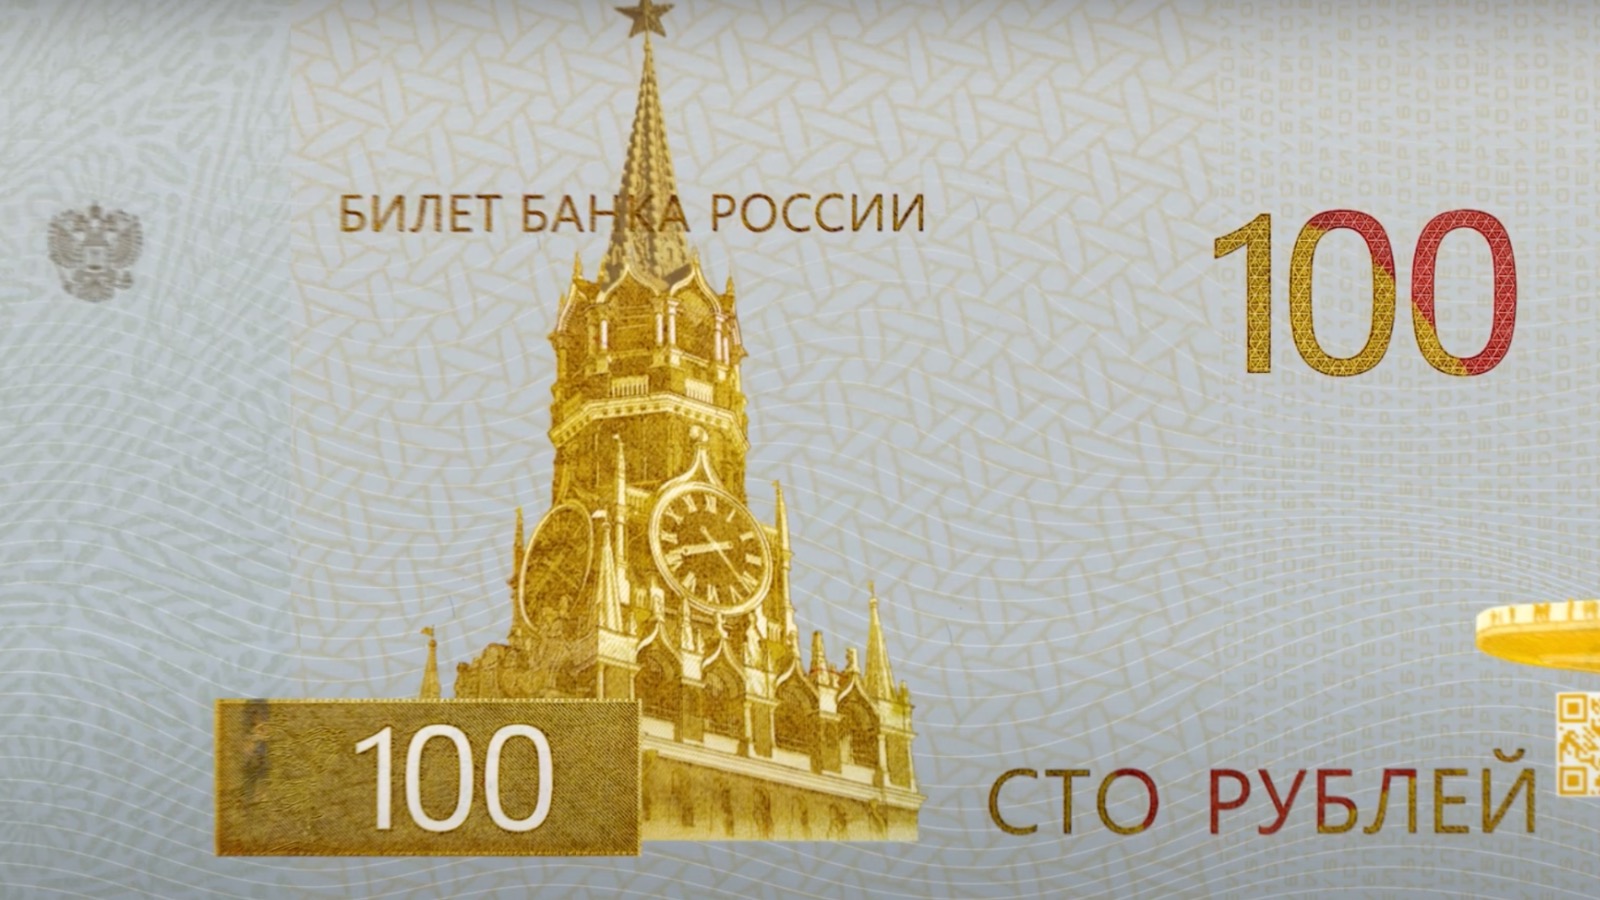 Новая купюра 100 рублей